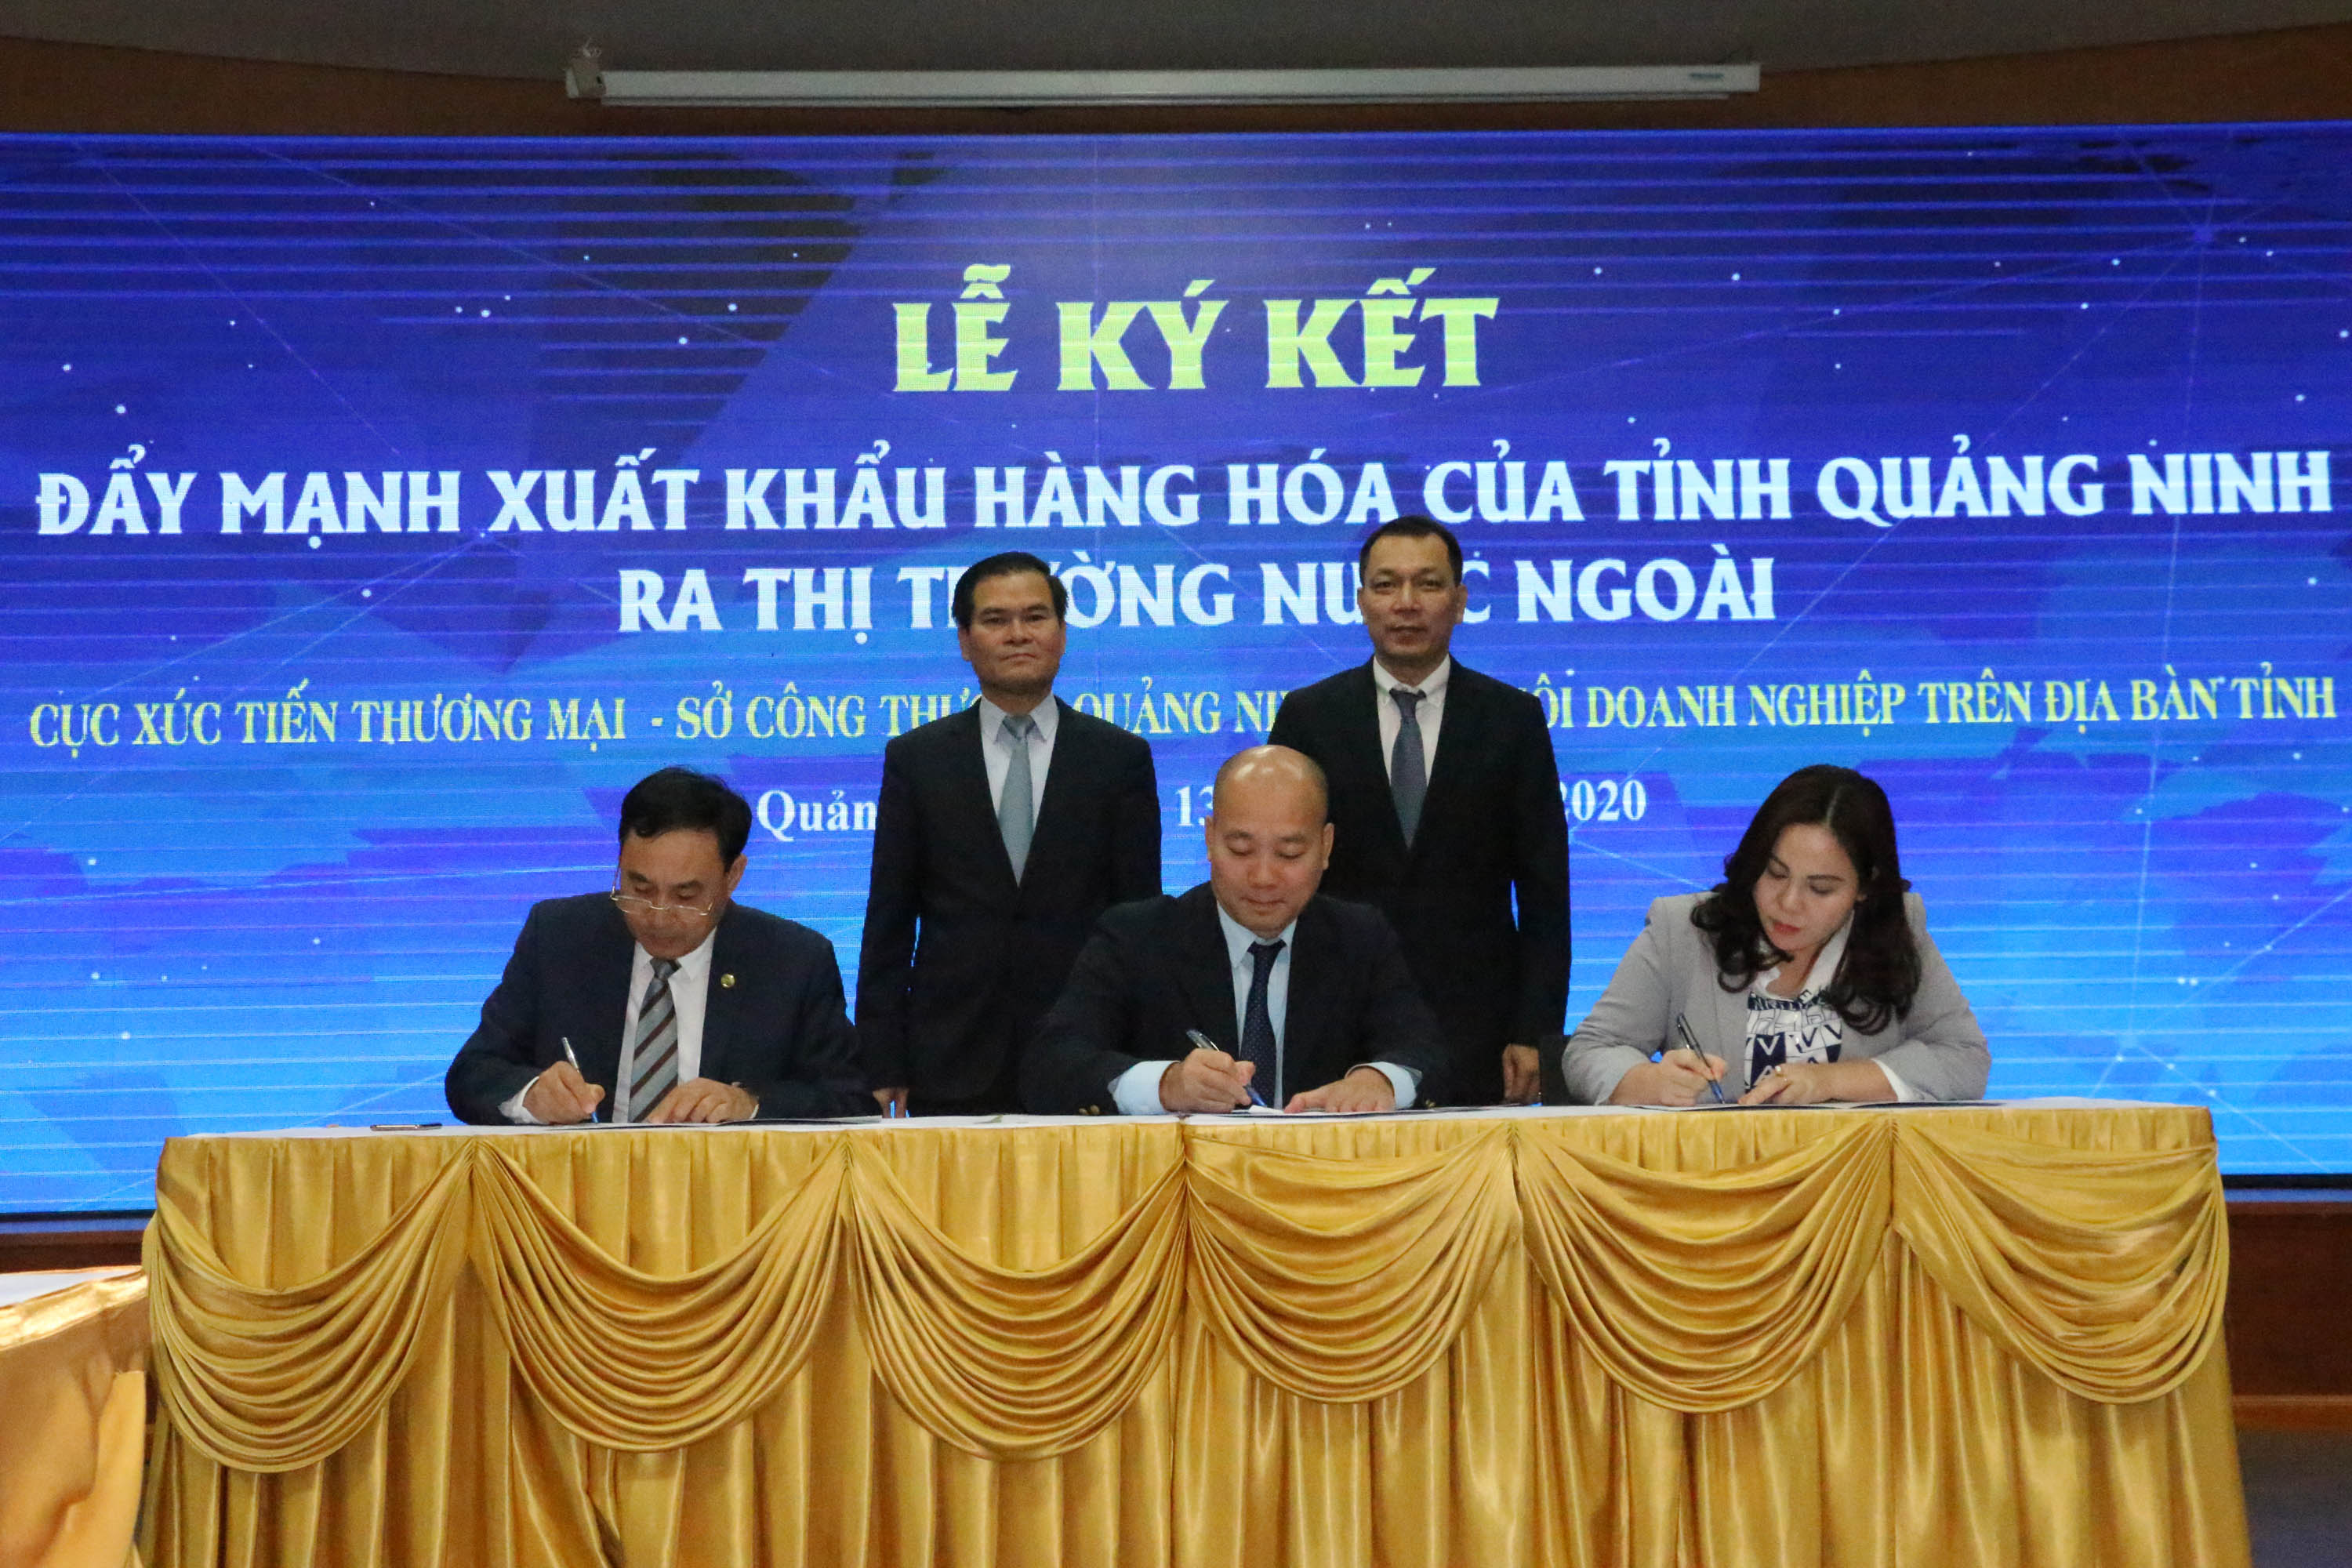 Cục Xúc tiến Thương mại, Sở Công Thương, Hiệp hội Doanh nghiệp tỉnh ký kết hỗ trợ kêu gọi đầu tư tỉnh Quảng Ninh, đặc biệt tại các KCN, KKT (tháng 11/2020).